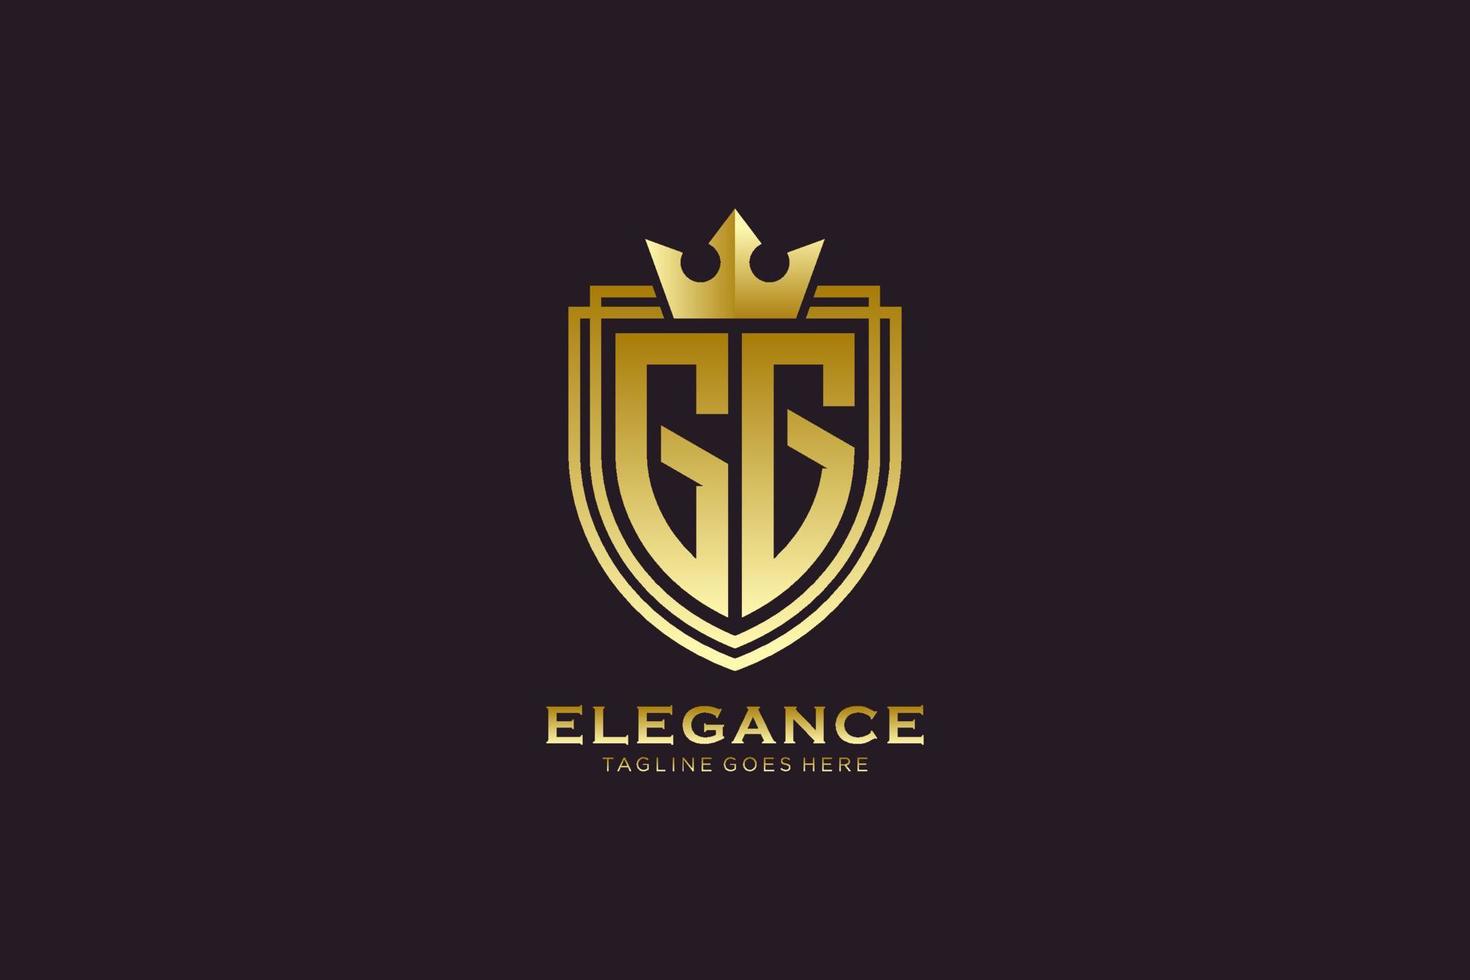 logo monogramme de luxe élégant initial gg ou modèle de badge avec volutes et couronne royale - parfait pour les projets de marque de luxe vecteur